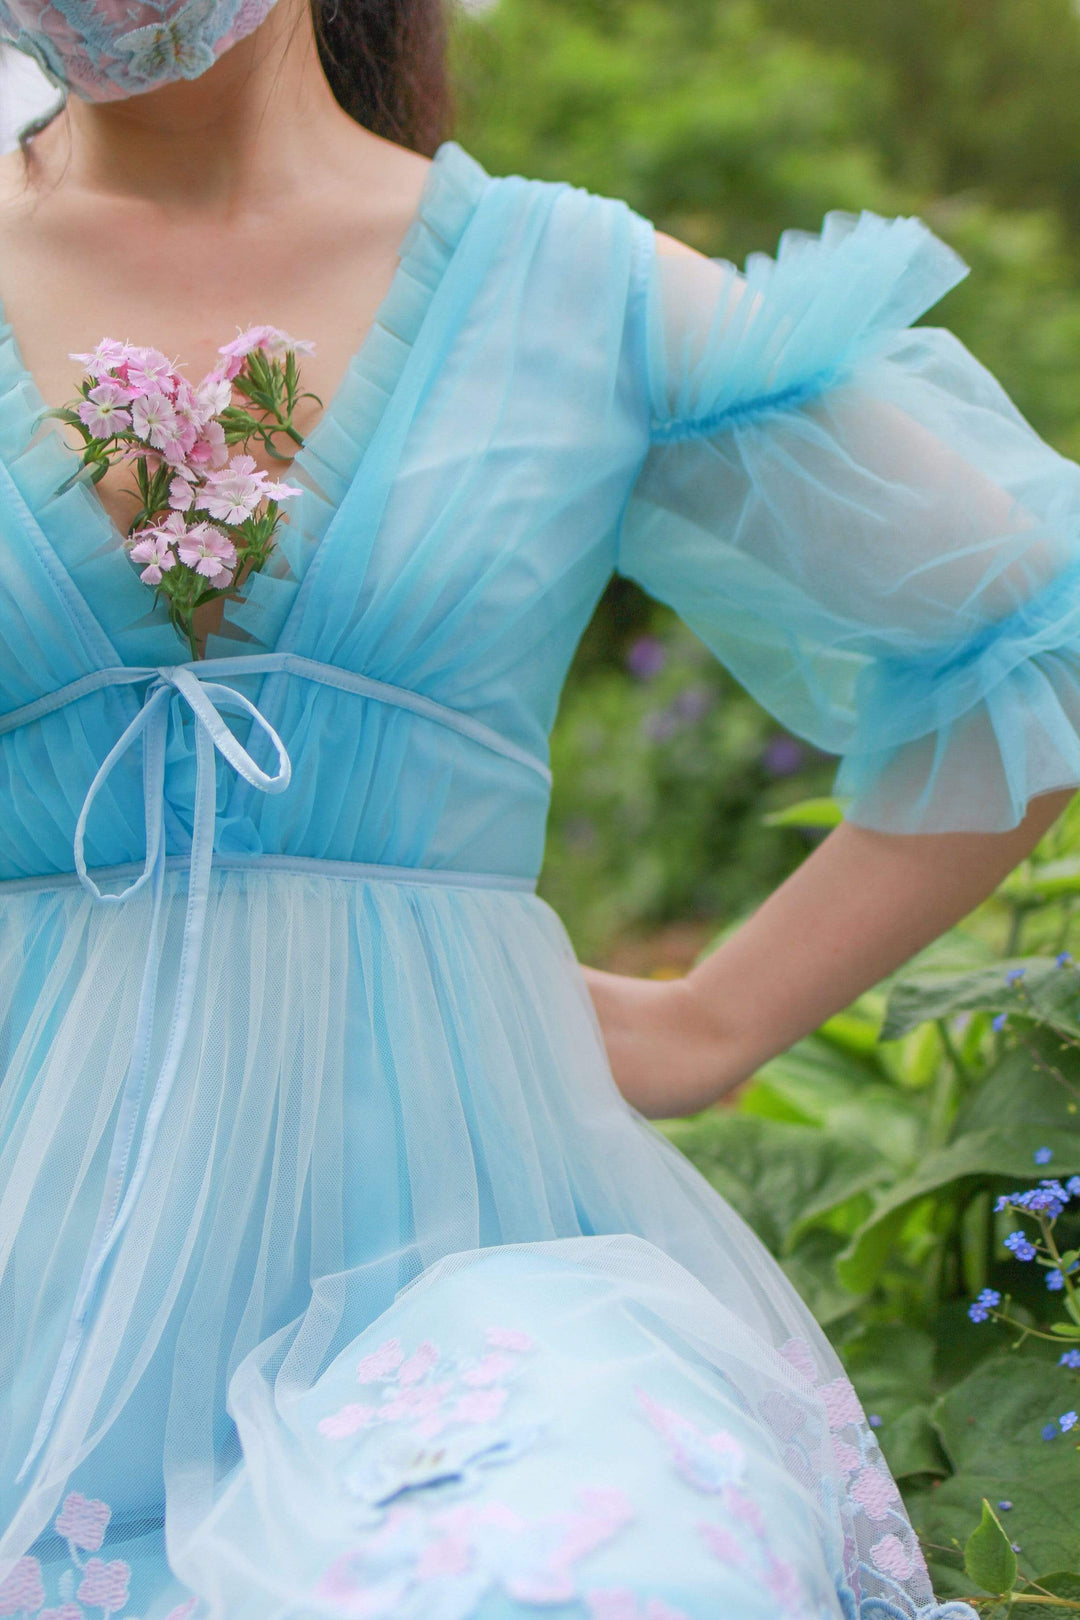 Fairy Tong dress Aurora Butterfly Dress